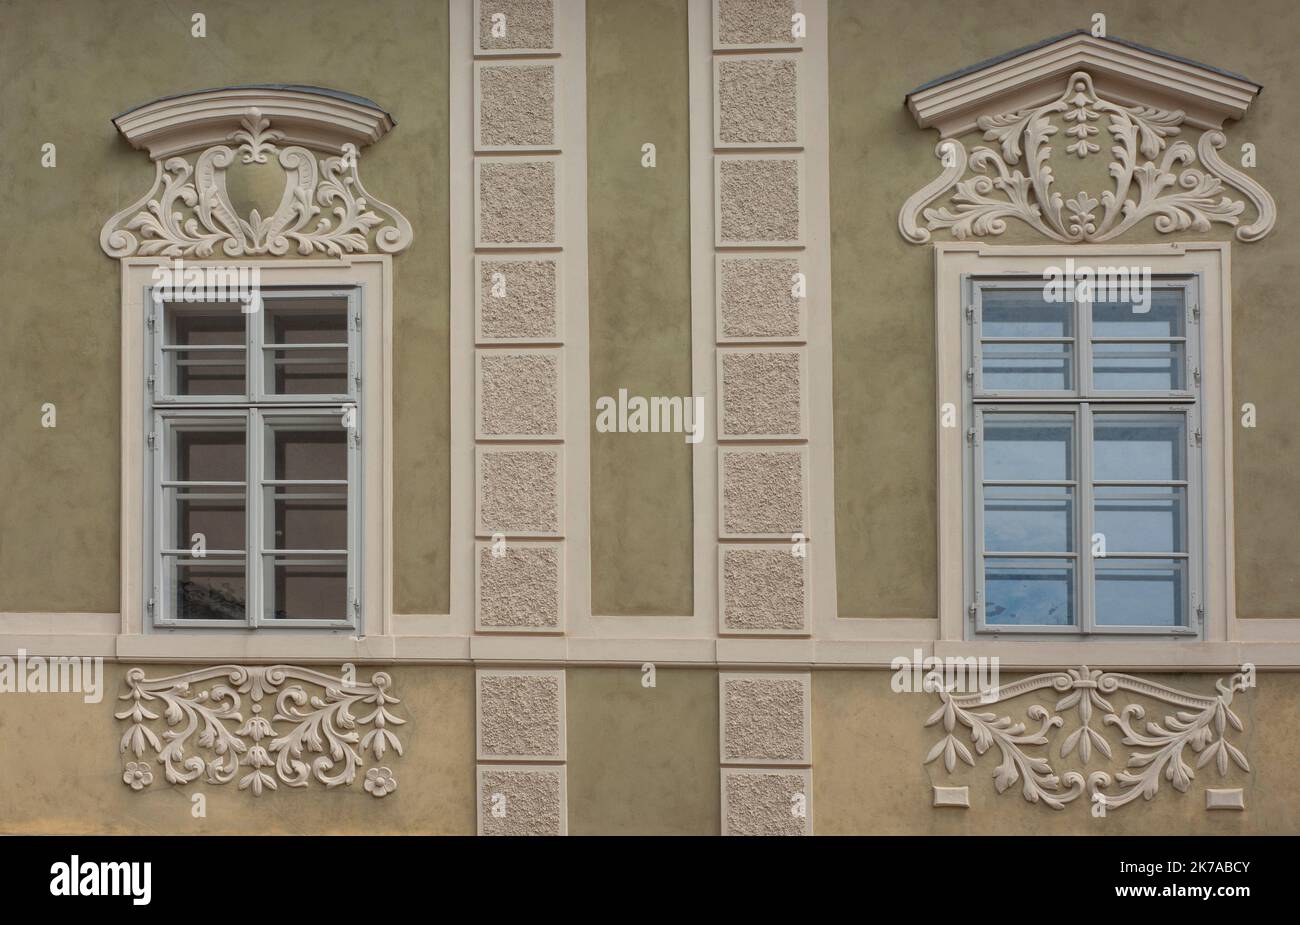 Vedi finissimi rivestimenti in gesso per finestre. La regione bohémien della Repubblica Ceca, Kutná Hora, è una città patrimonio dell'umanità dell'UNESCO con architettura medievale. Foto Stock